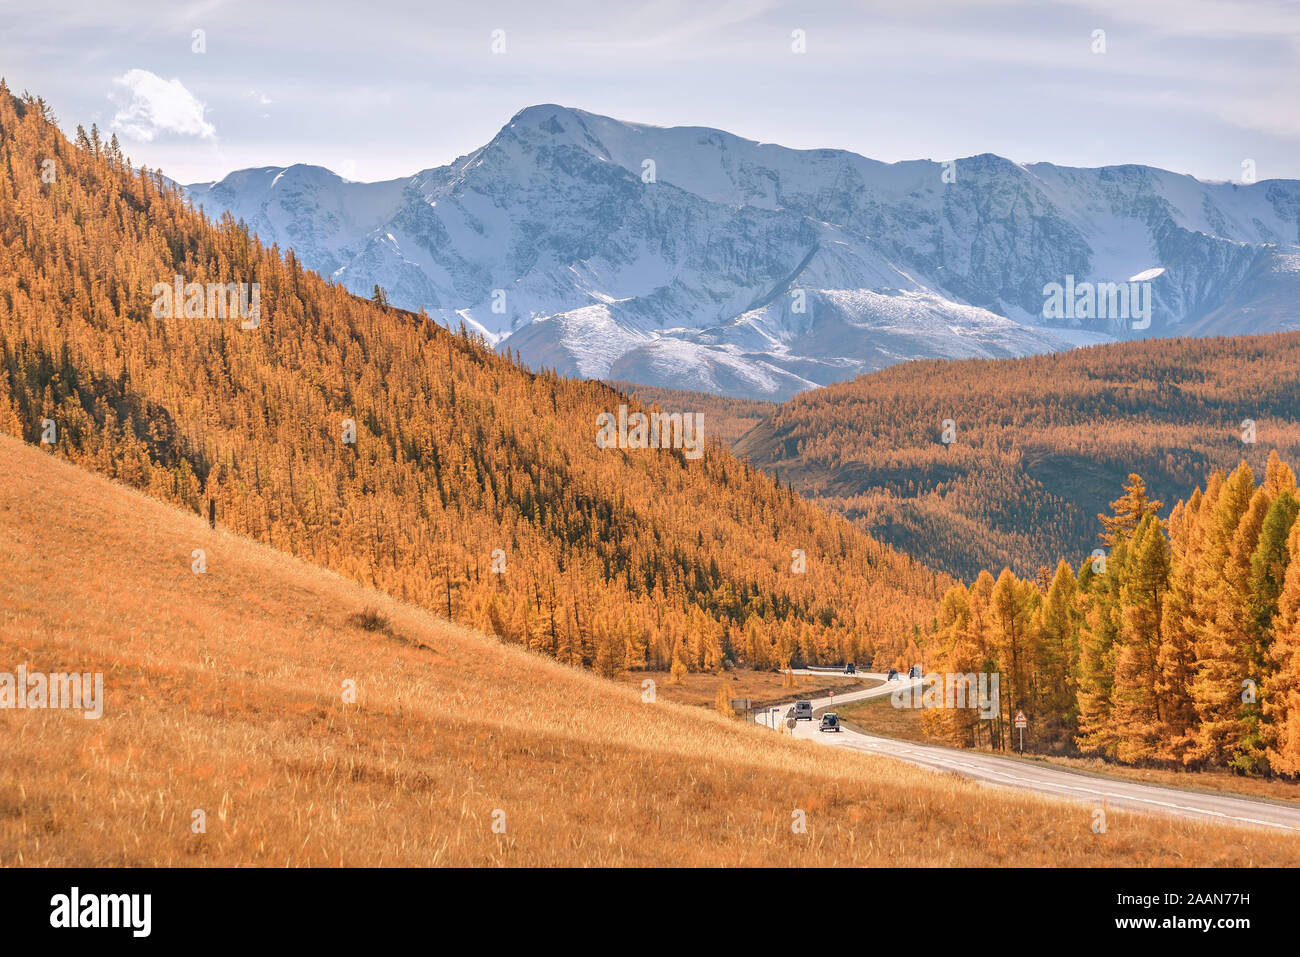 Colorido Paisaje otoñal con un sinuoso camino asfaltado a las montañas cubiertas de nieve y bosques y árboles de alerce doradas. Altai, Rusia Foto de stock